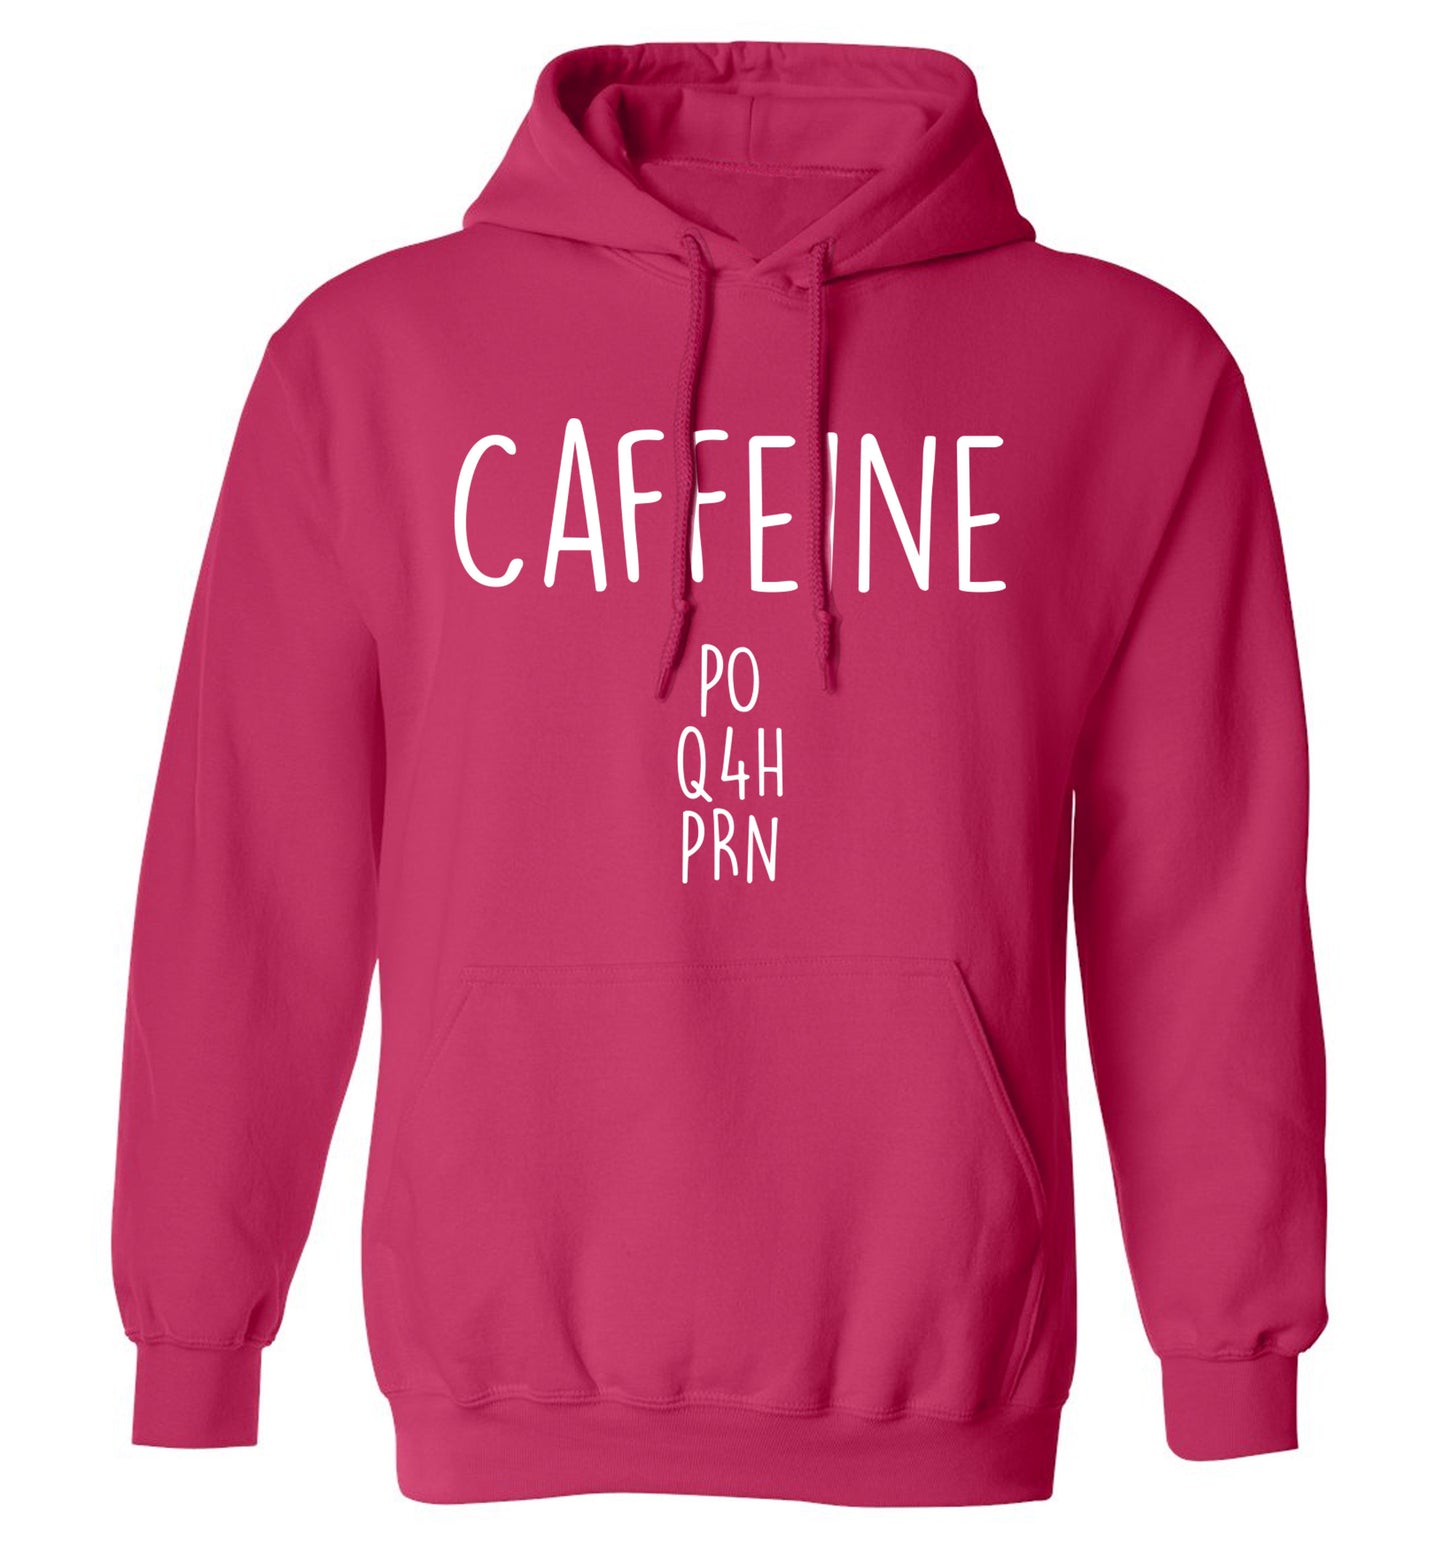 Caffeine PO Q4H PRN adults unisex pink hoodie 2XL